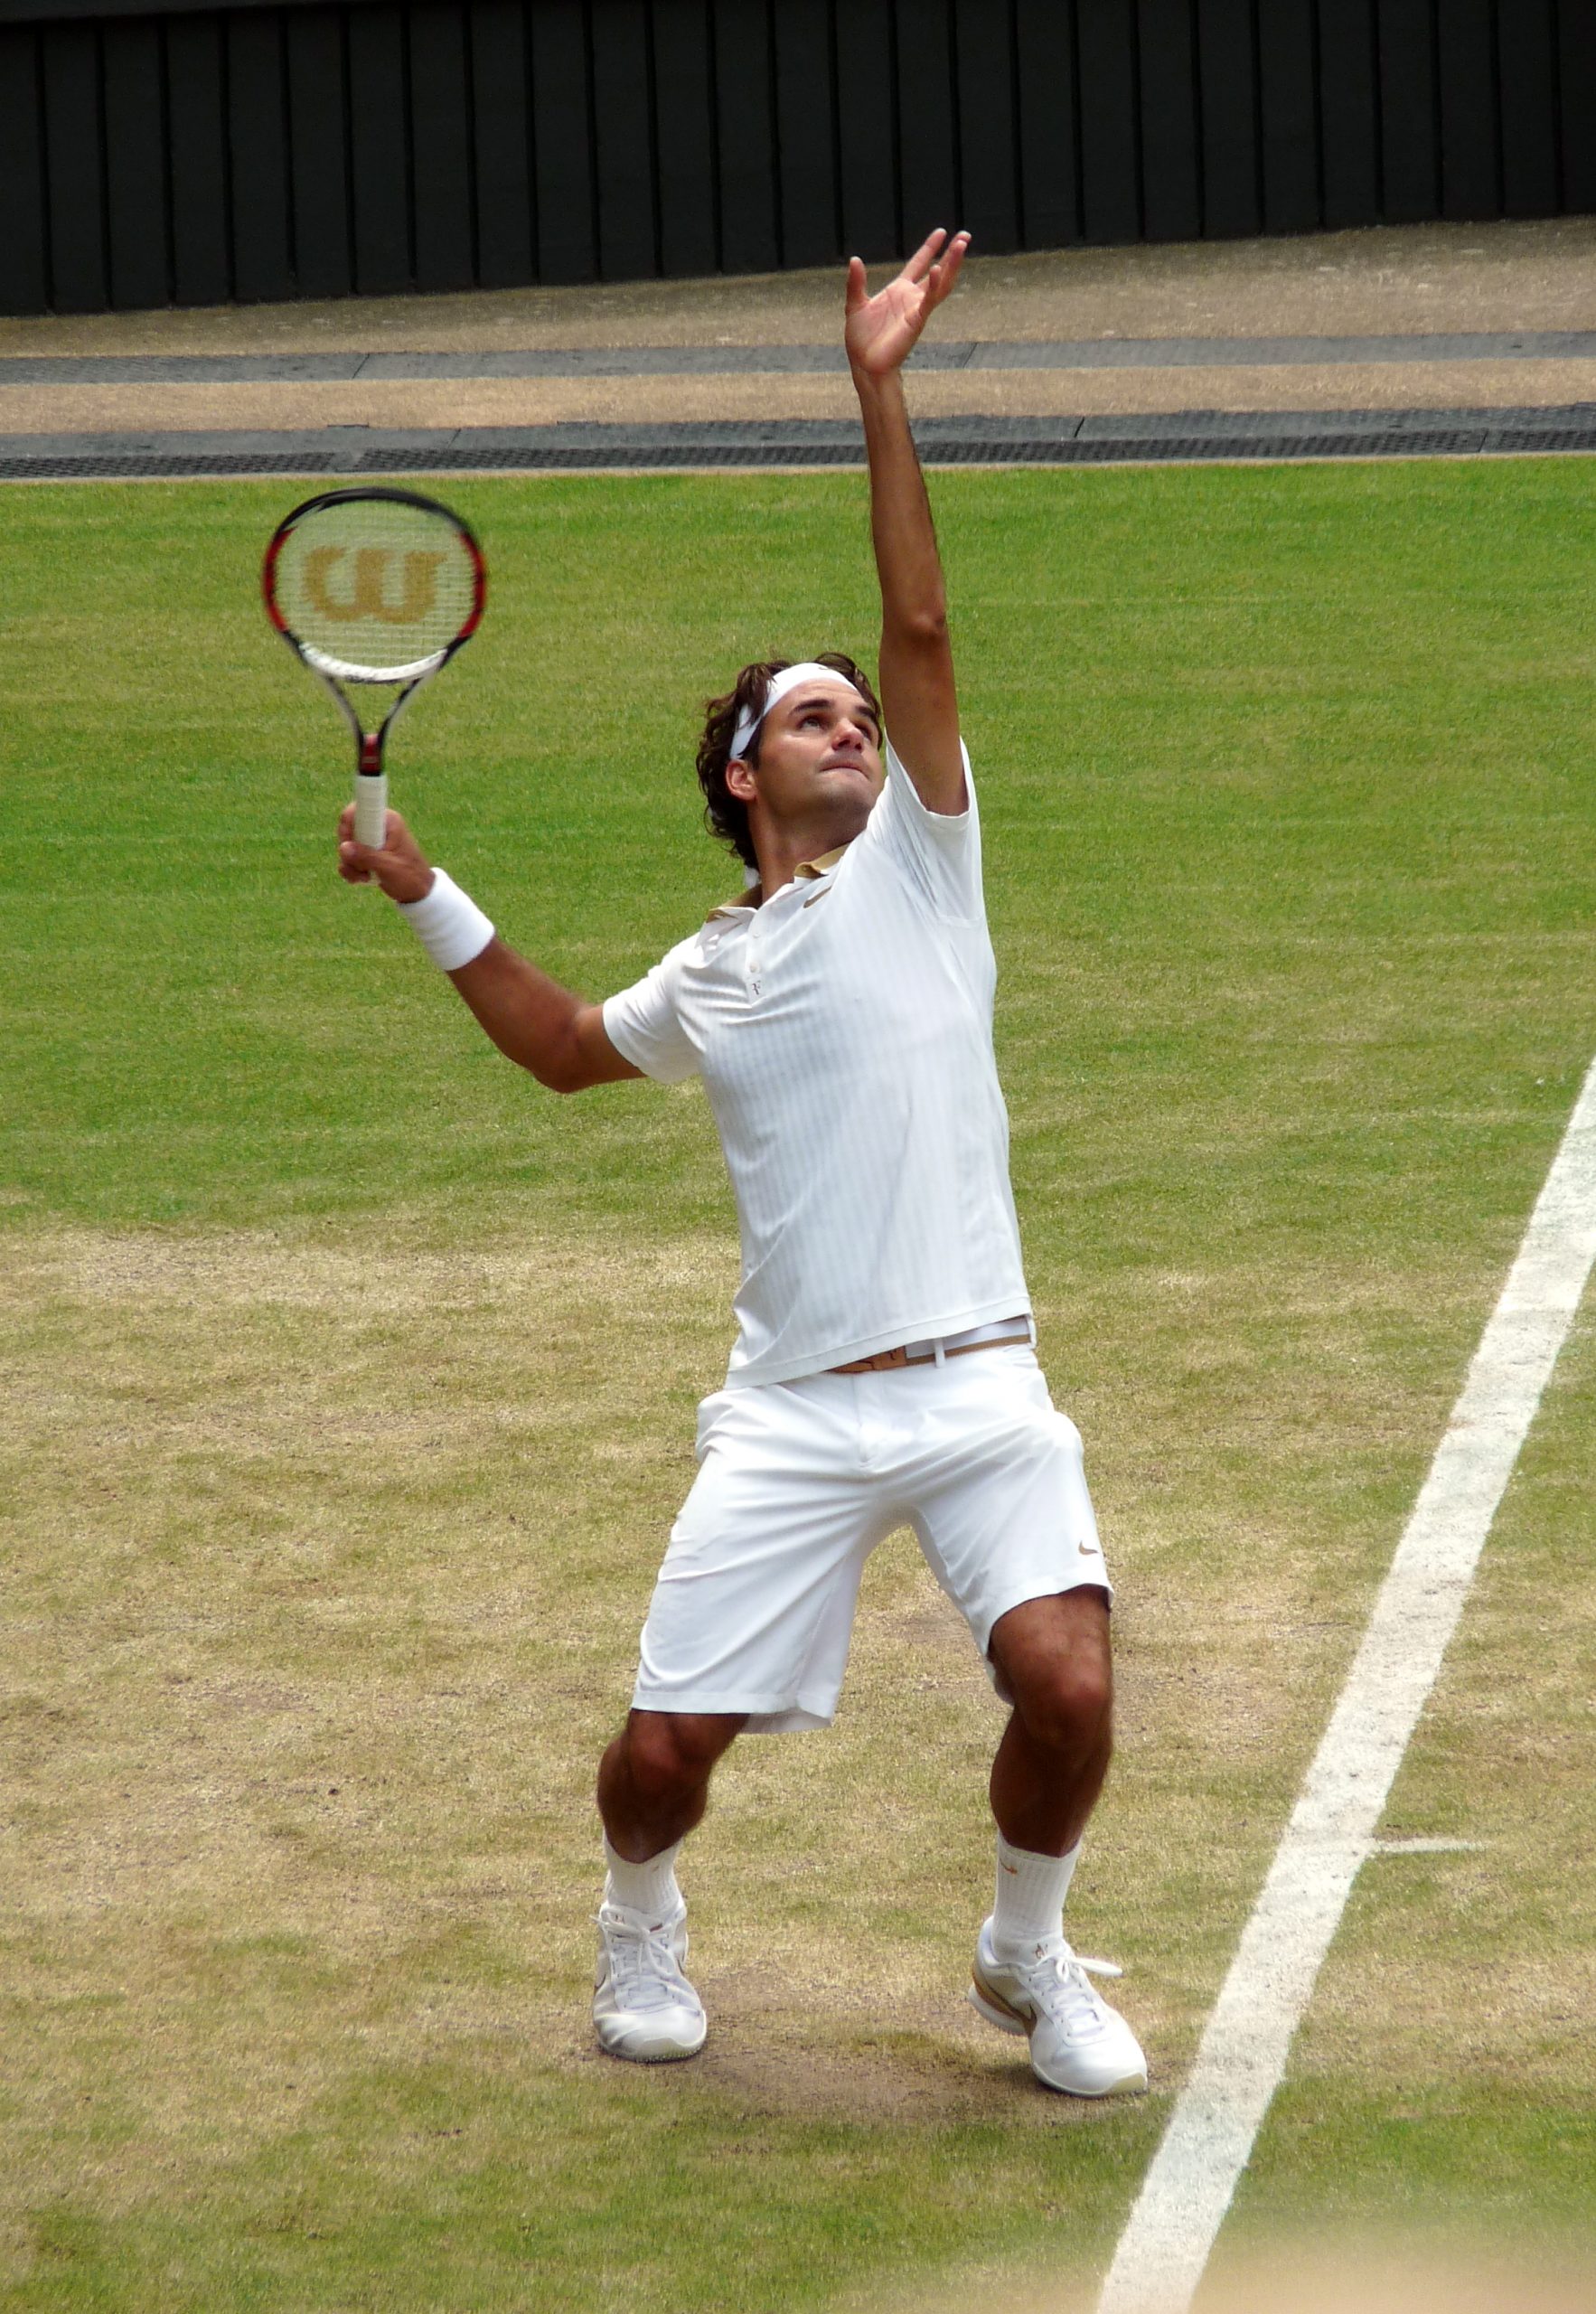 Roger Federer serving at Wimbledon